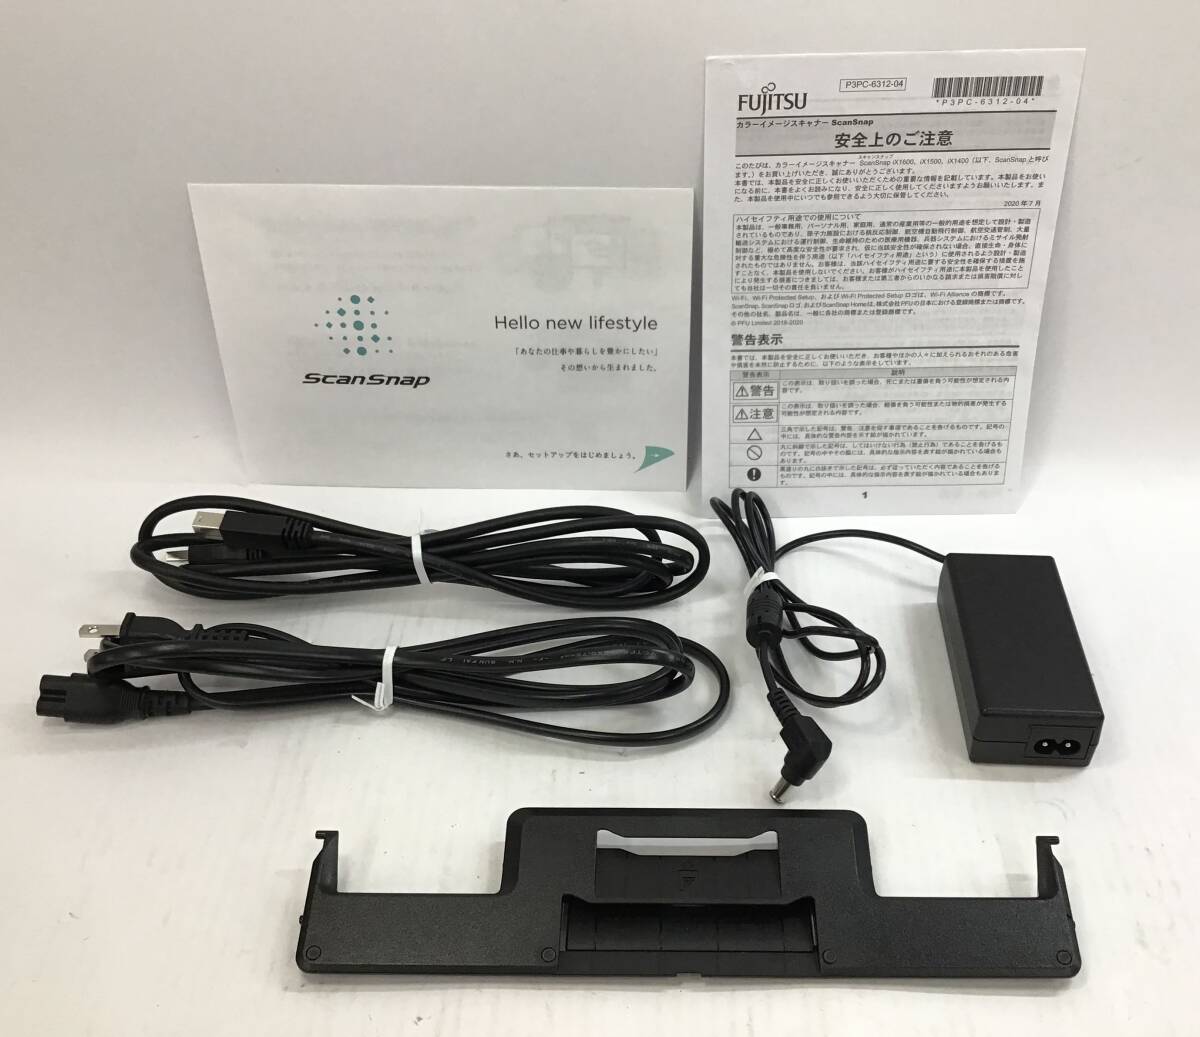 FUJITSU ScanSnap iX1600 сканер документов FI-IX1600ABK чёрный / черный 2021 год производства корпус кабель оригинальная коробка с руководством пользователя Fujitsu 